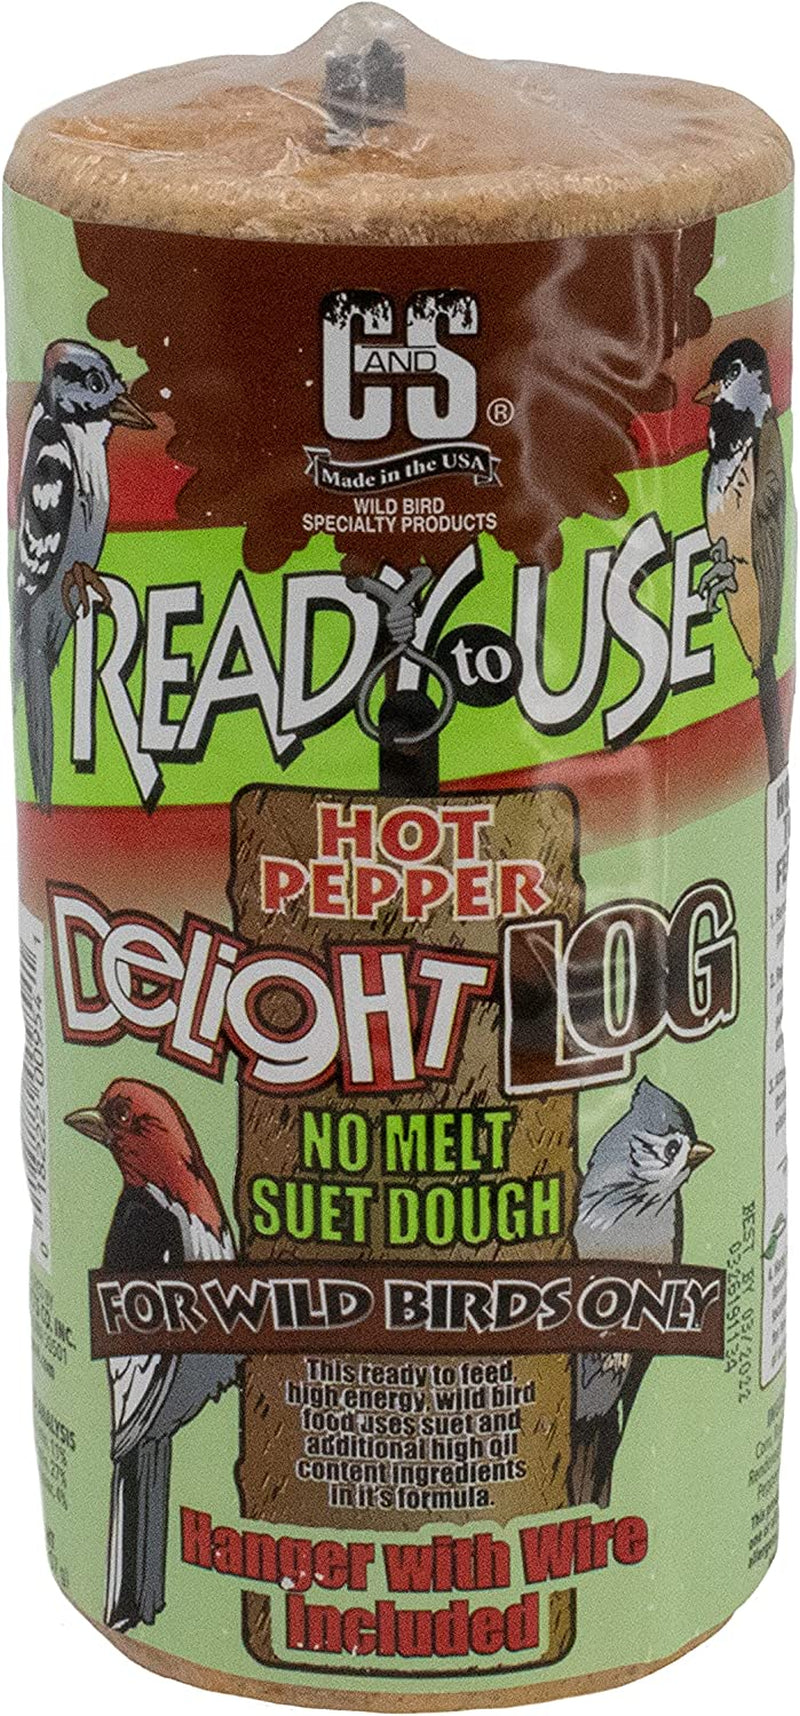 C&S Ready to Use Hot Pepper Delight Log 2 Pounds, 8 Pack Animals & Pet Supplies > Pet Supplies > Bird Supplies > Bird Food Central Garden & Pet   